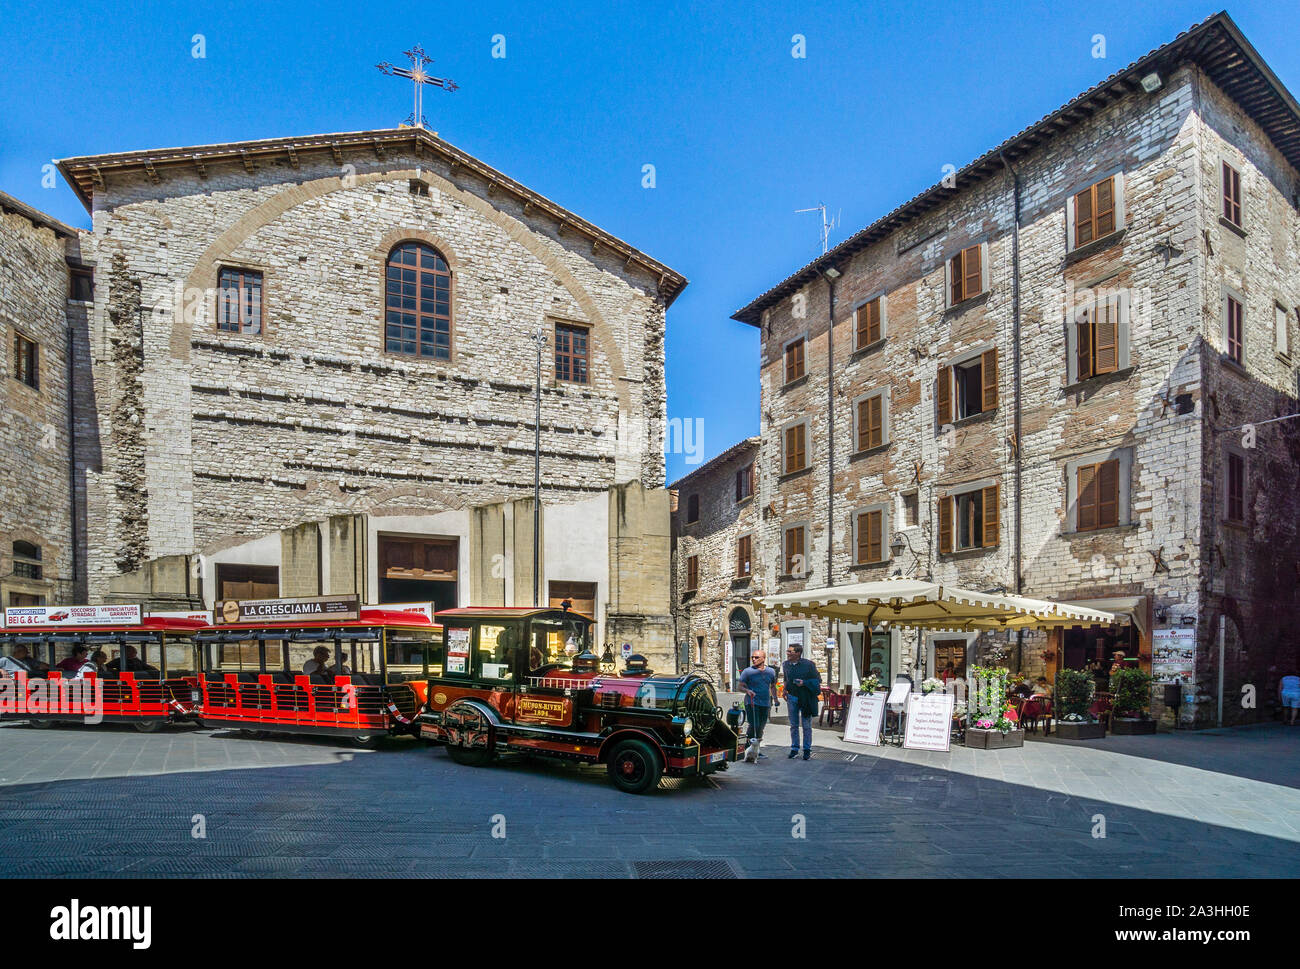 Piazza urbana presso la chiesa di San Domenico nel centro medievale di Gubbio in Umbria, Italia Foto Stock